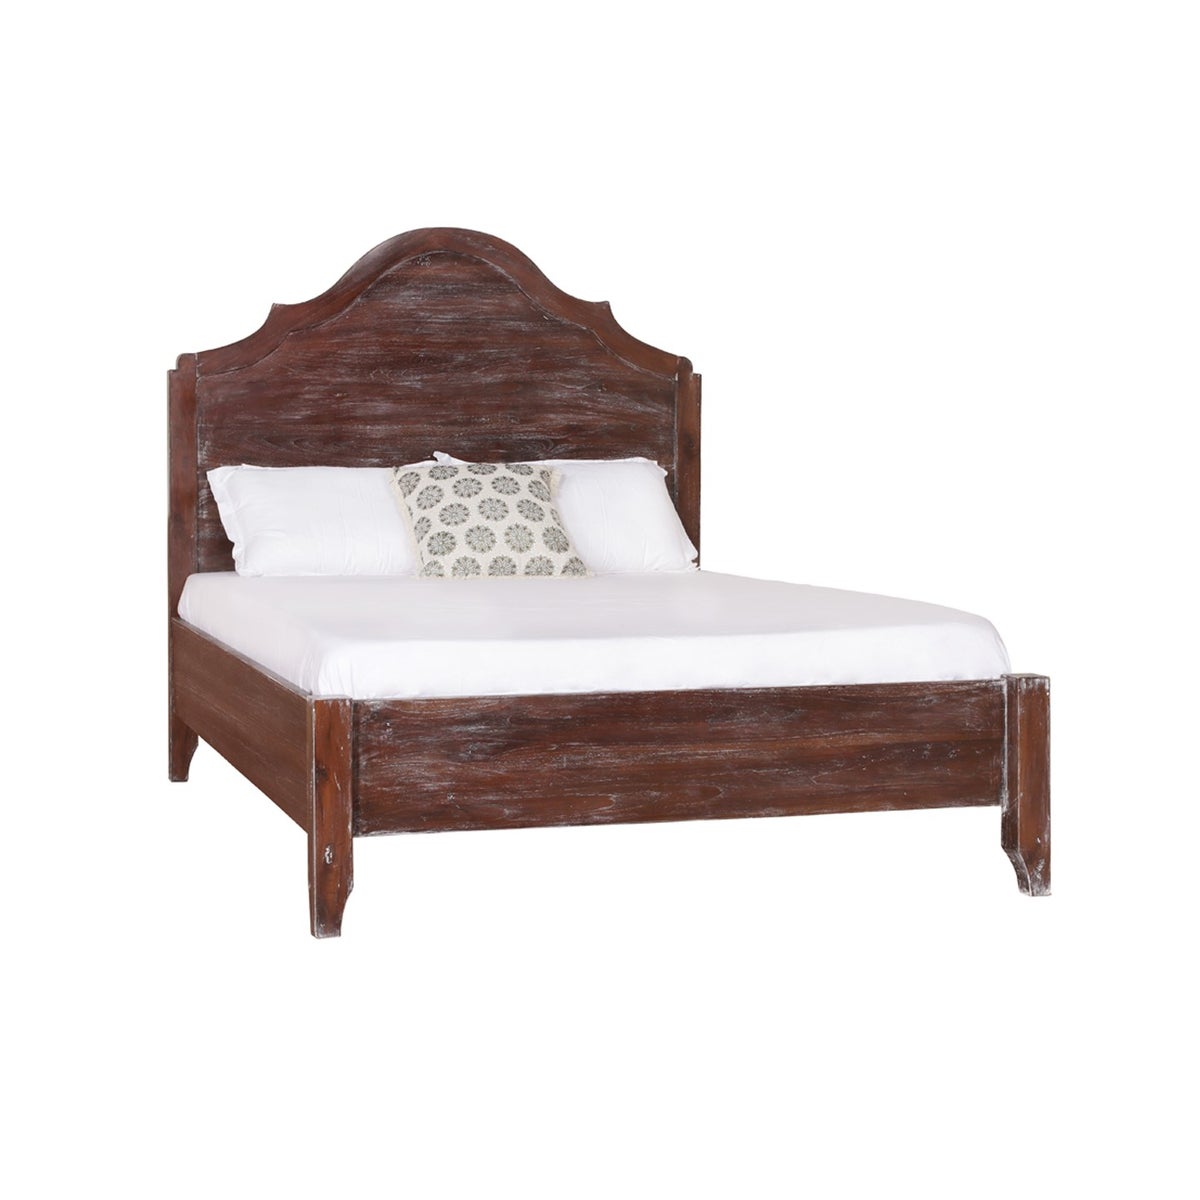 Vintage Swedish Bed, King